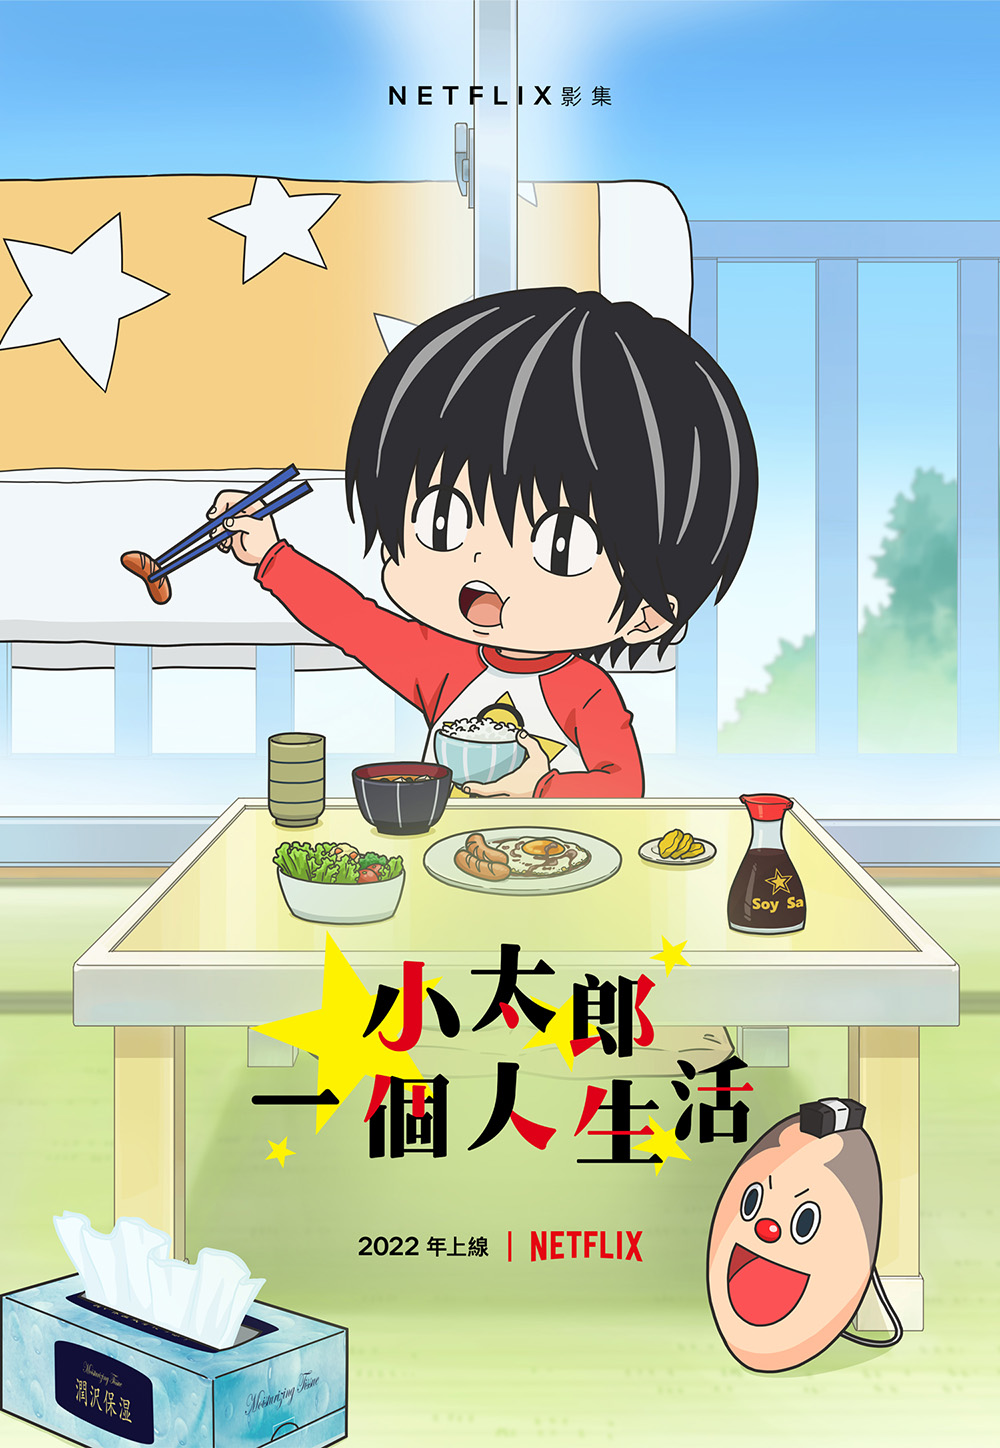 《小太郎一个人生活》动画将于 3/10 Netflix 上架插图